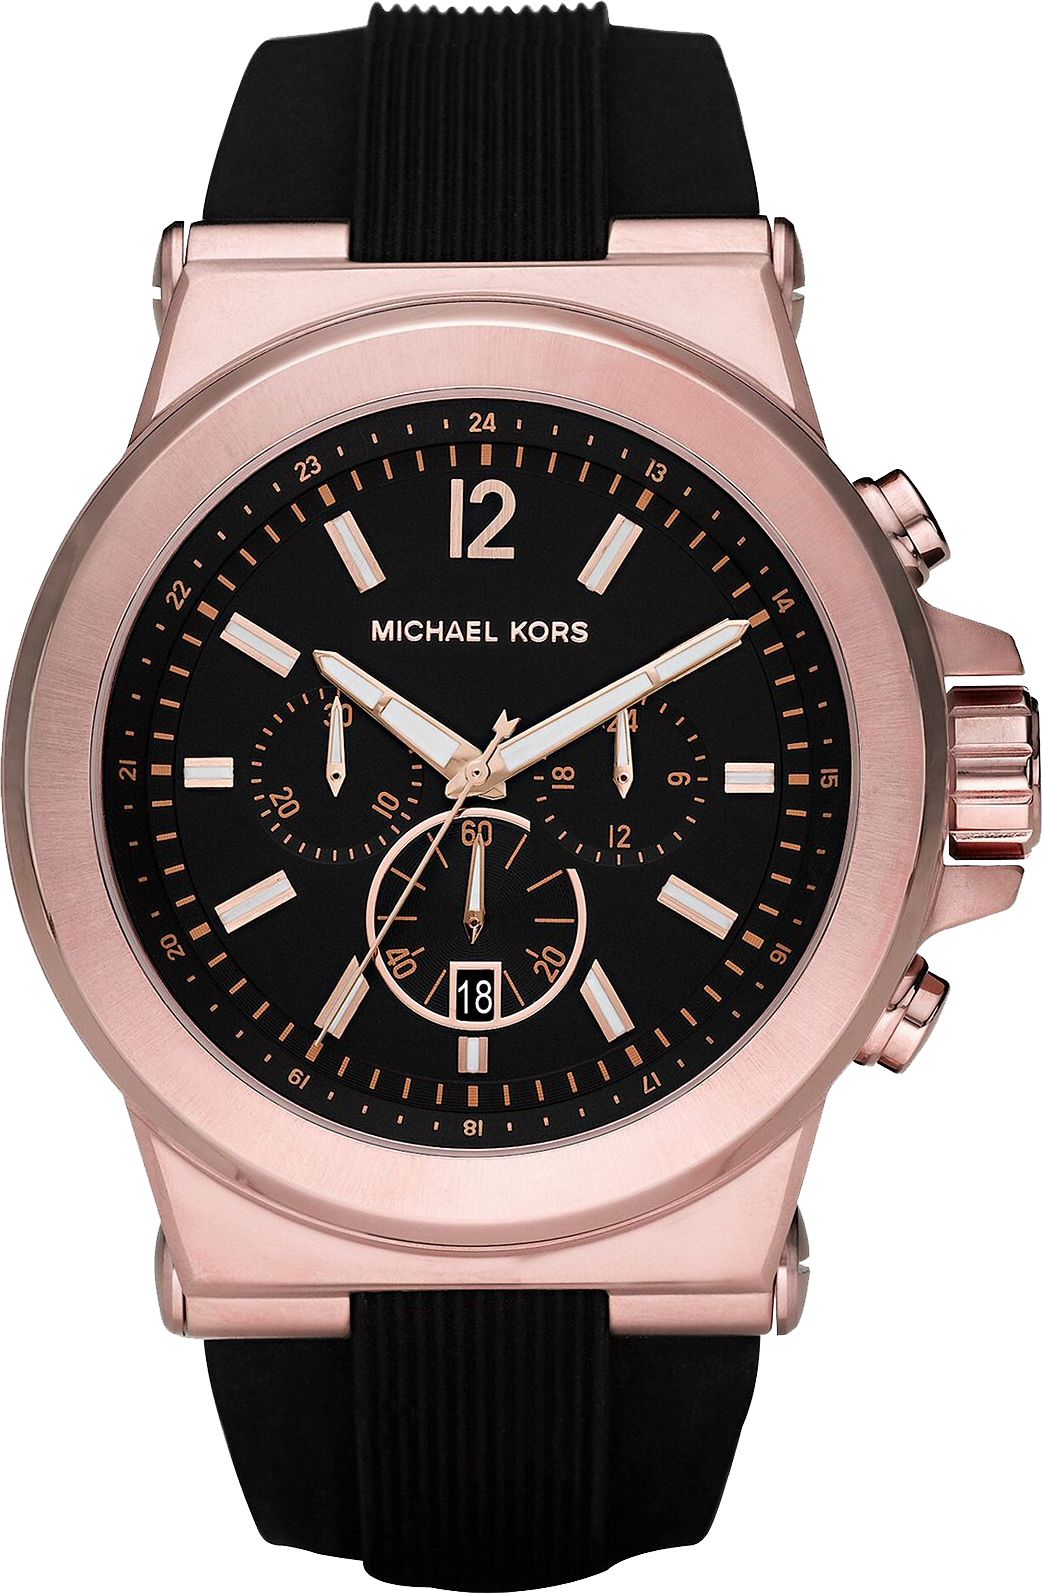 Michael Kors Darci Rose Gold Stainless Steel Womens Watch MK3366 xách tay  chính hãng giá rẻ bảo hành dài  Đồng hồ nữ  Senmix